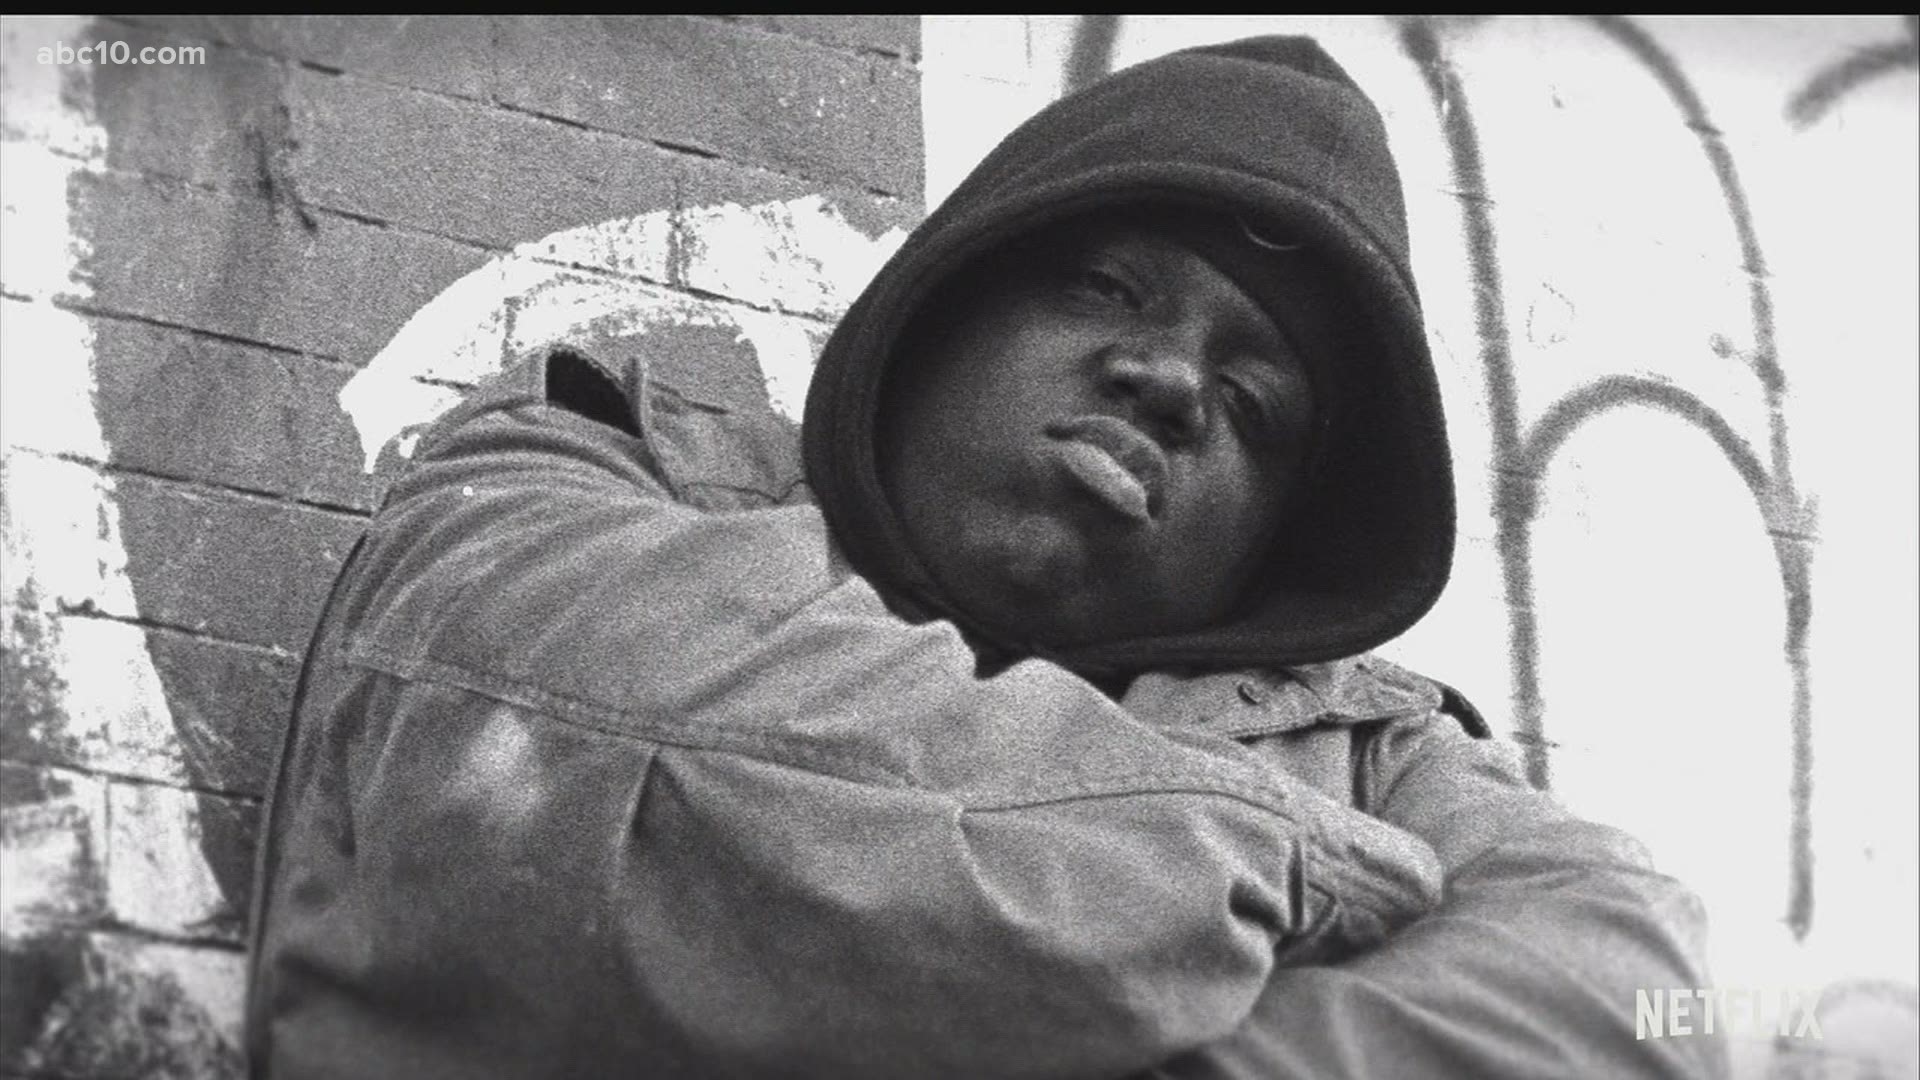 Documentário sobre Notorious B.I.G chega à Netflix em março